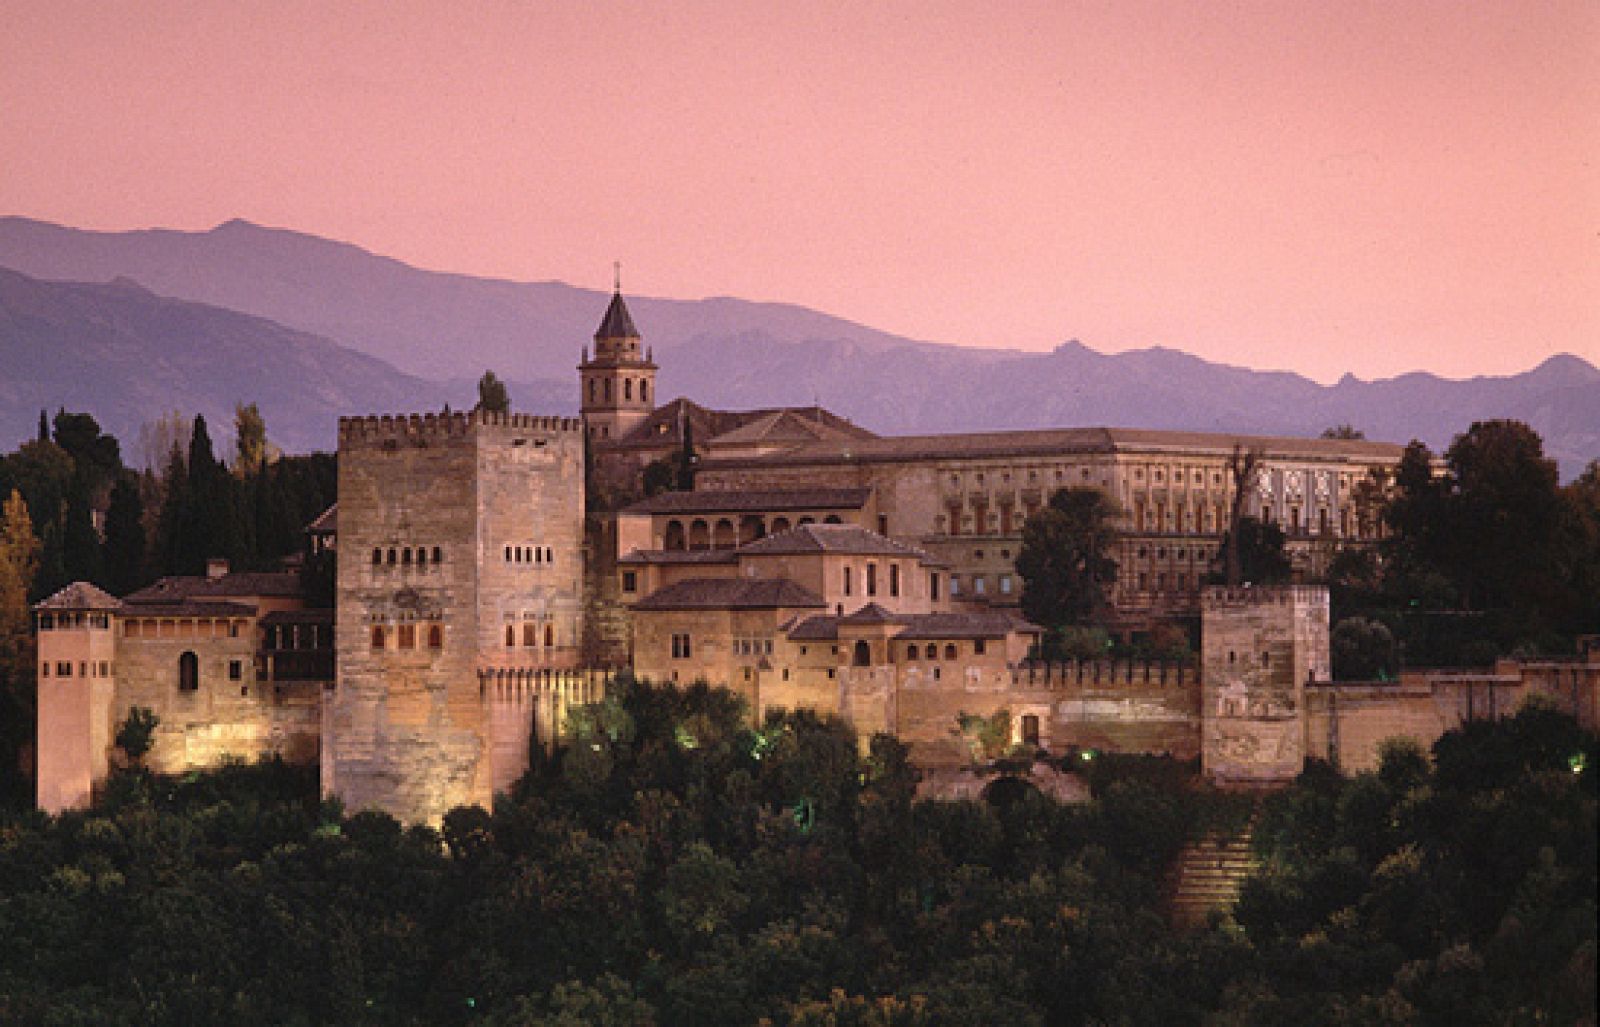 La mitad invisible - La Alhambra